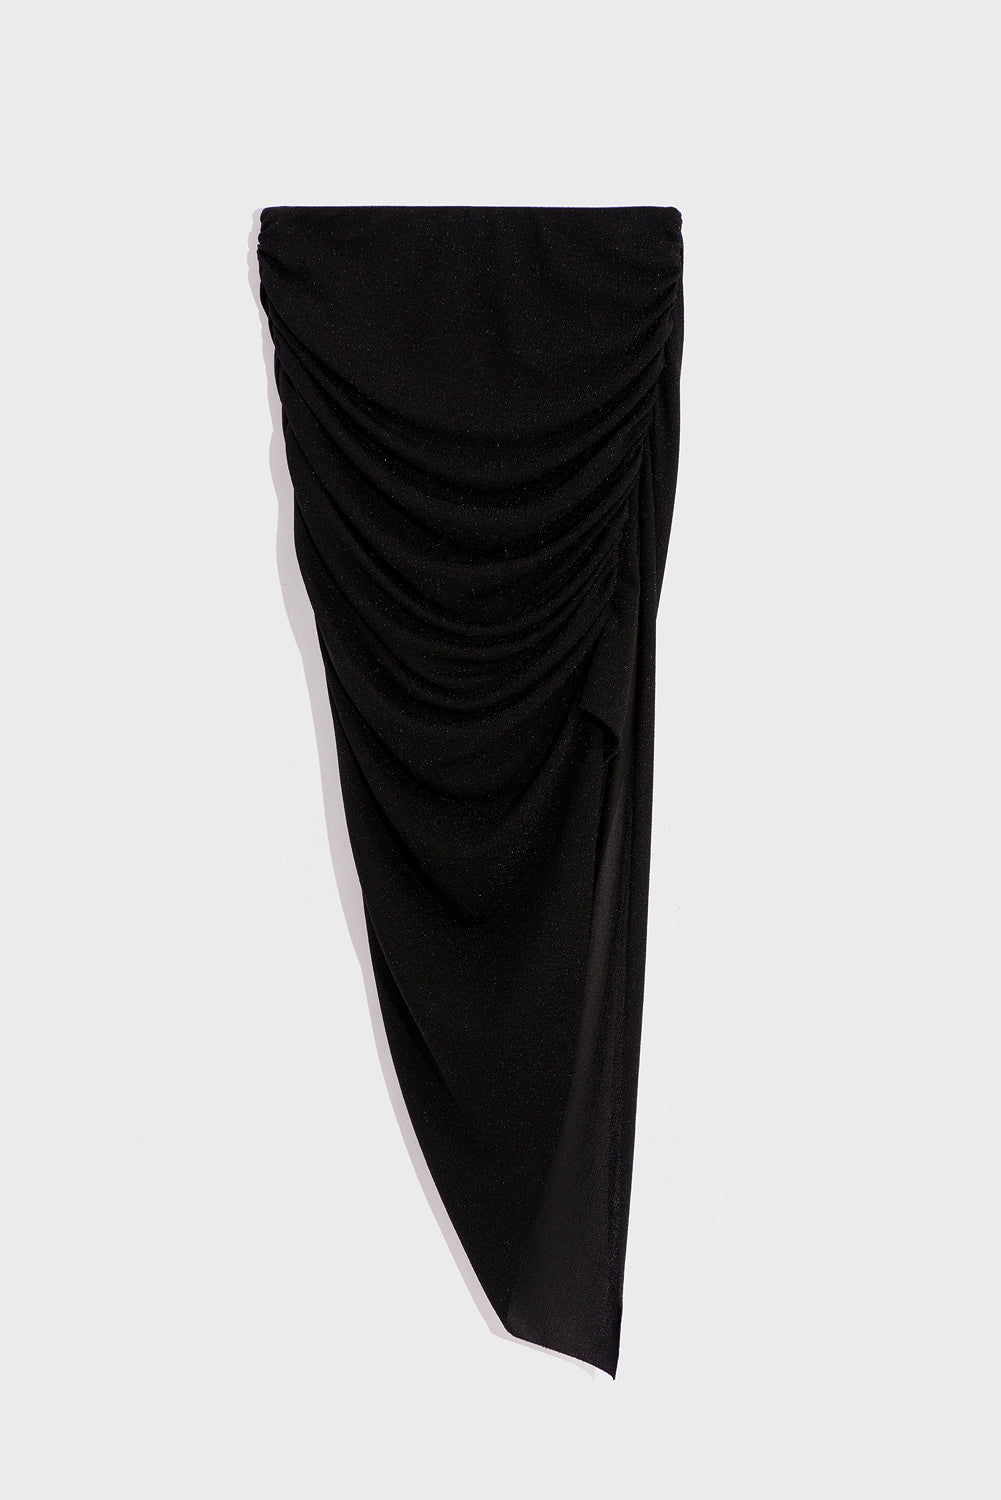 Black Short Skirt Asymmetrical skirt